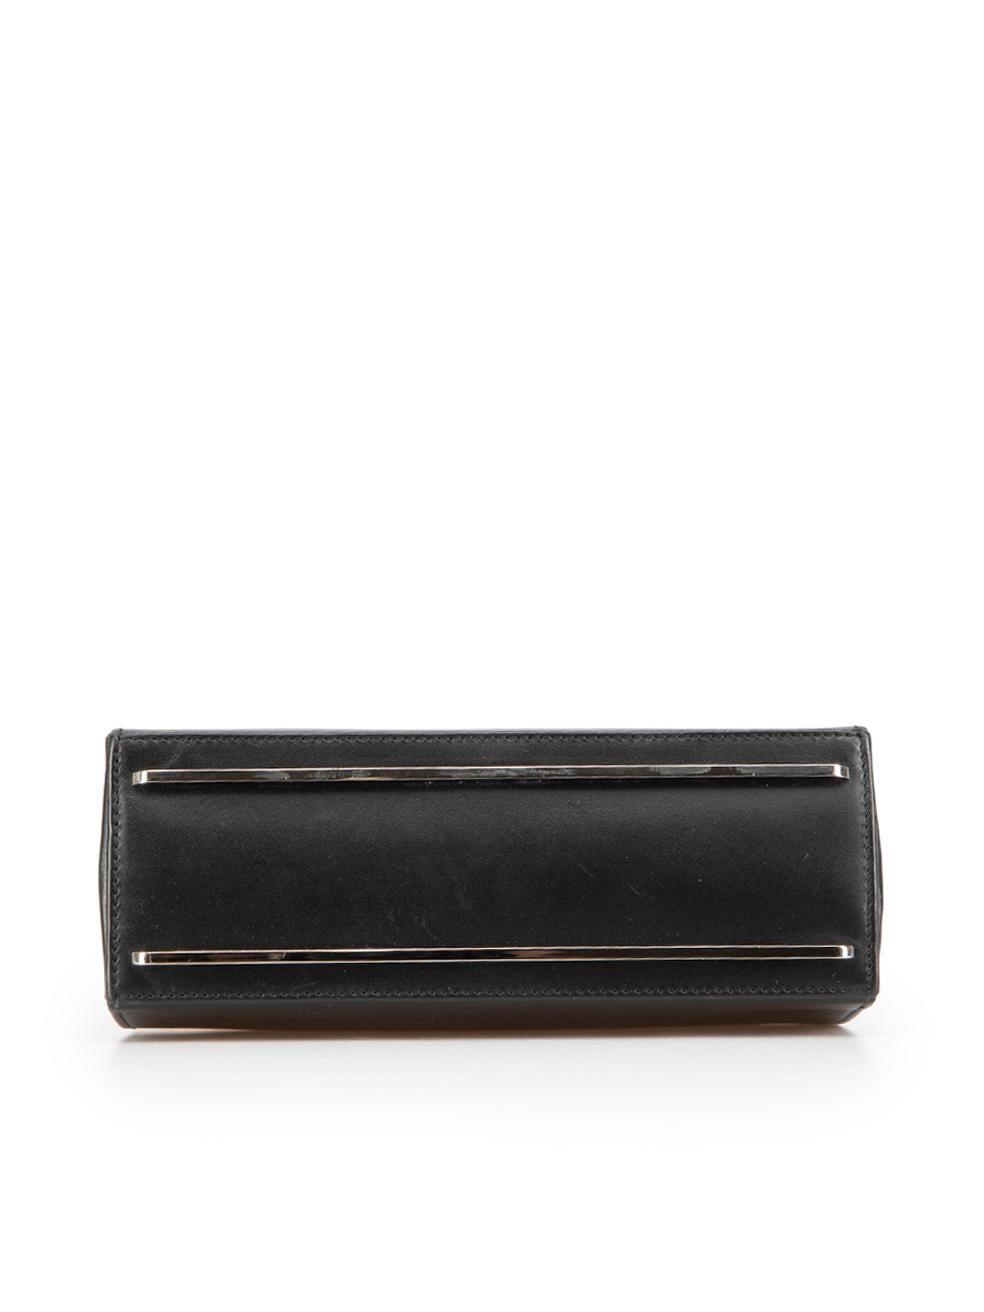 Balenciaga Women's Black Leather Le Dix Handbag 1